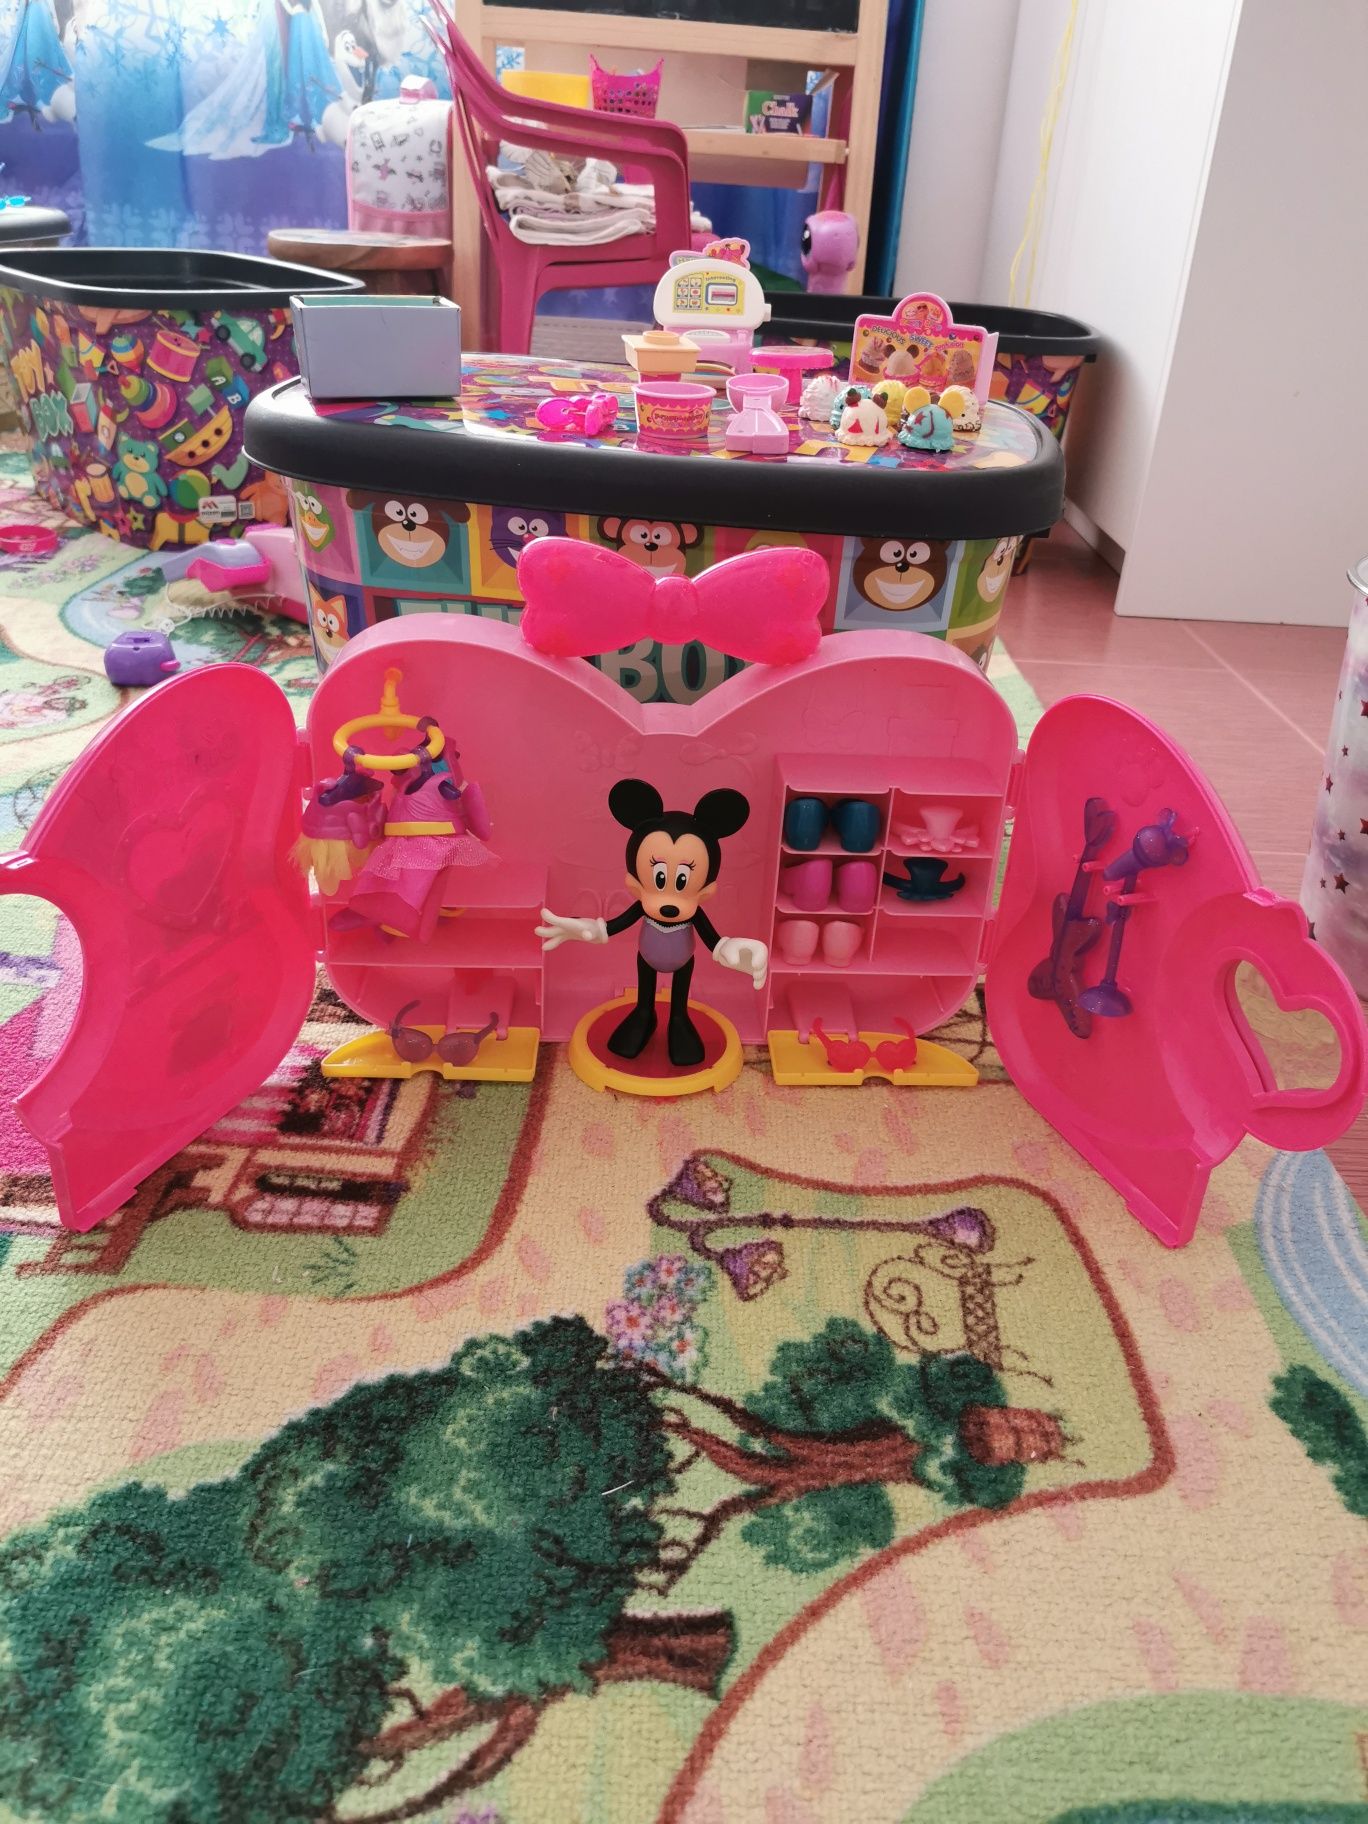 Minnie mouse plusuri, jucării din plastic masinute